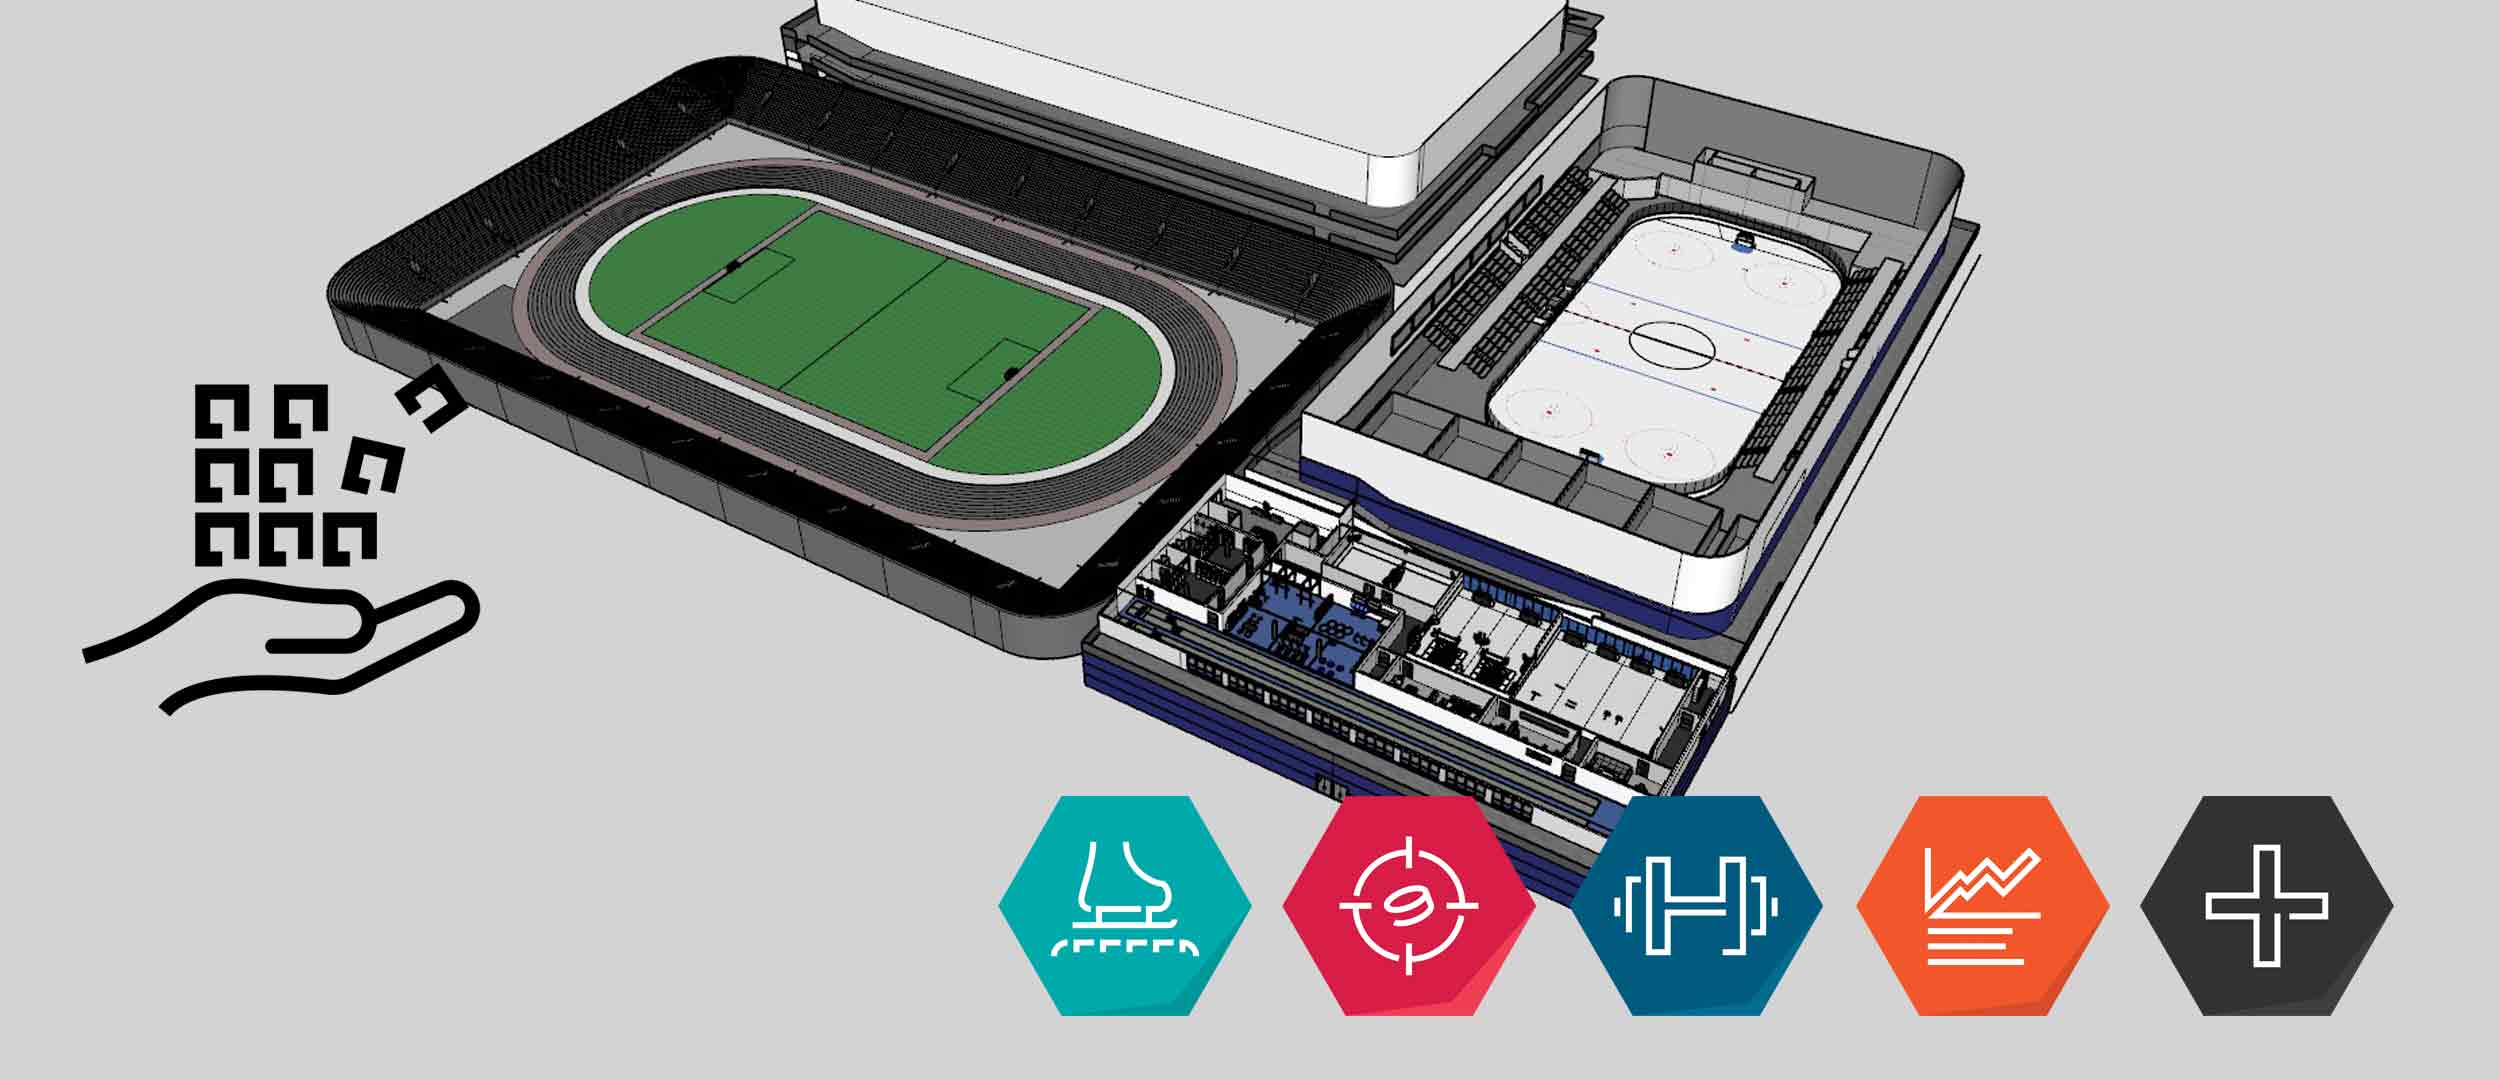 HDTS hockey facility solutions